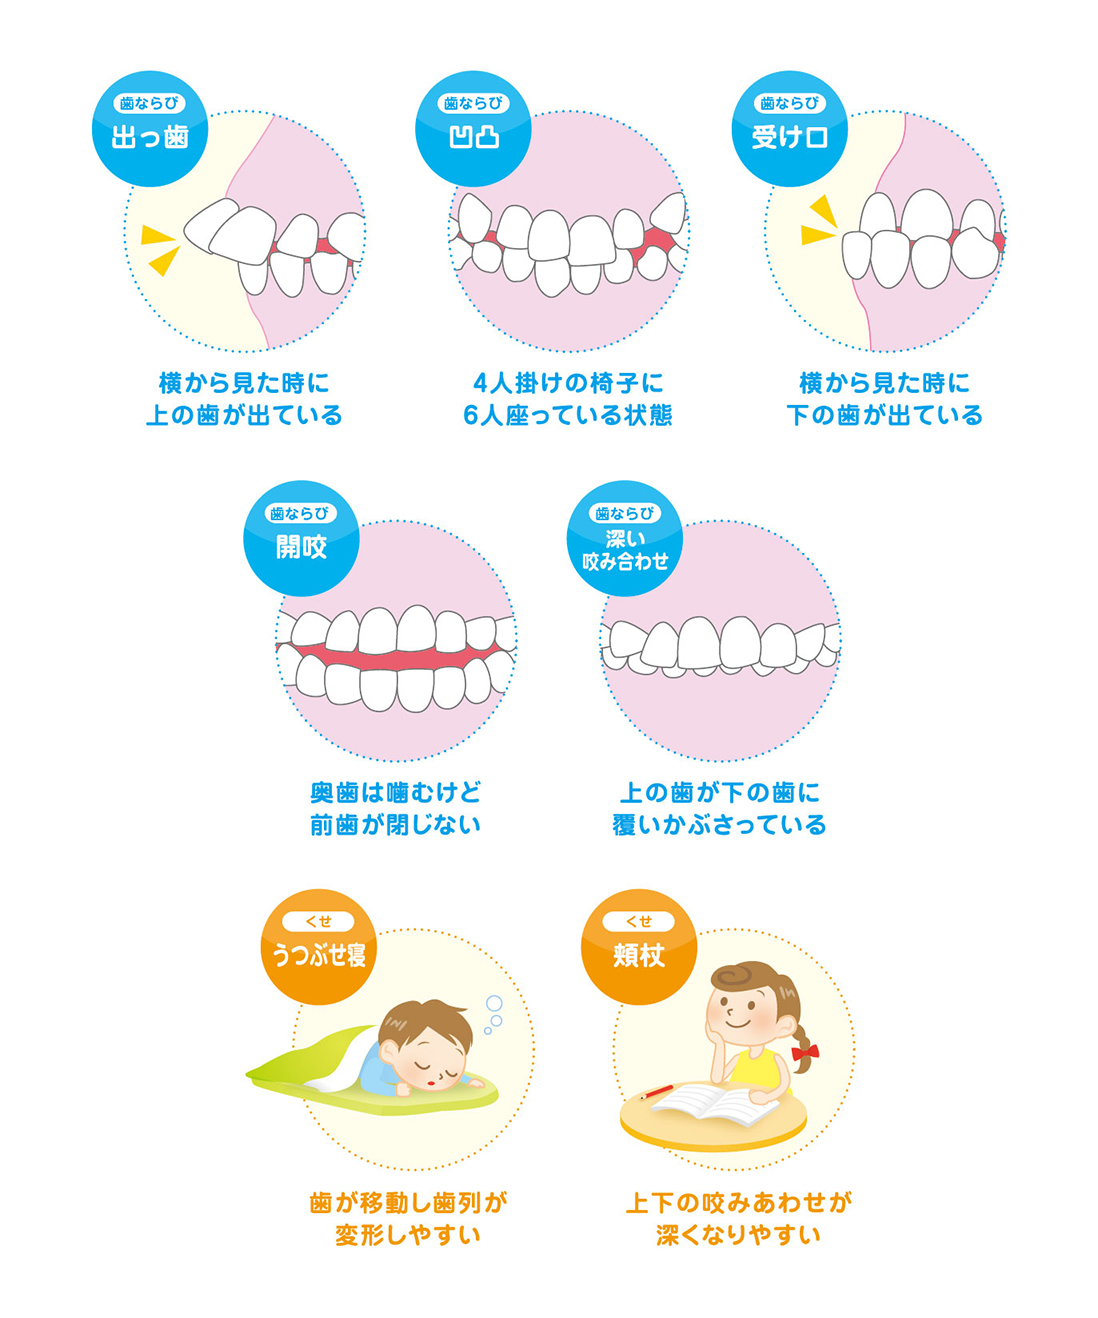 歯並びを予防する、という考え方。